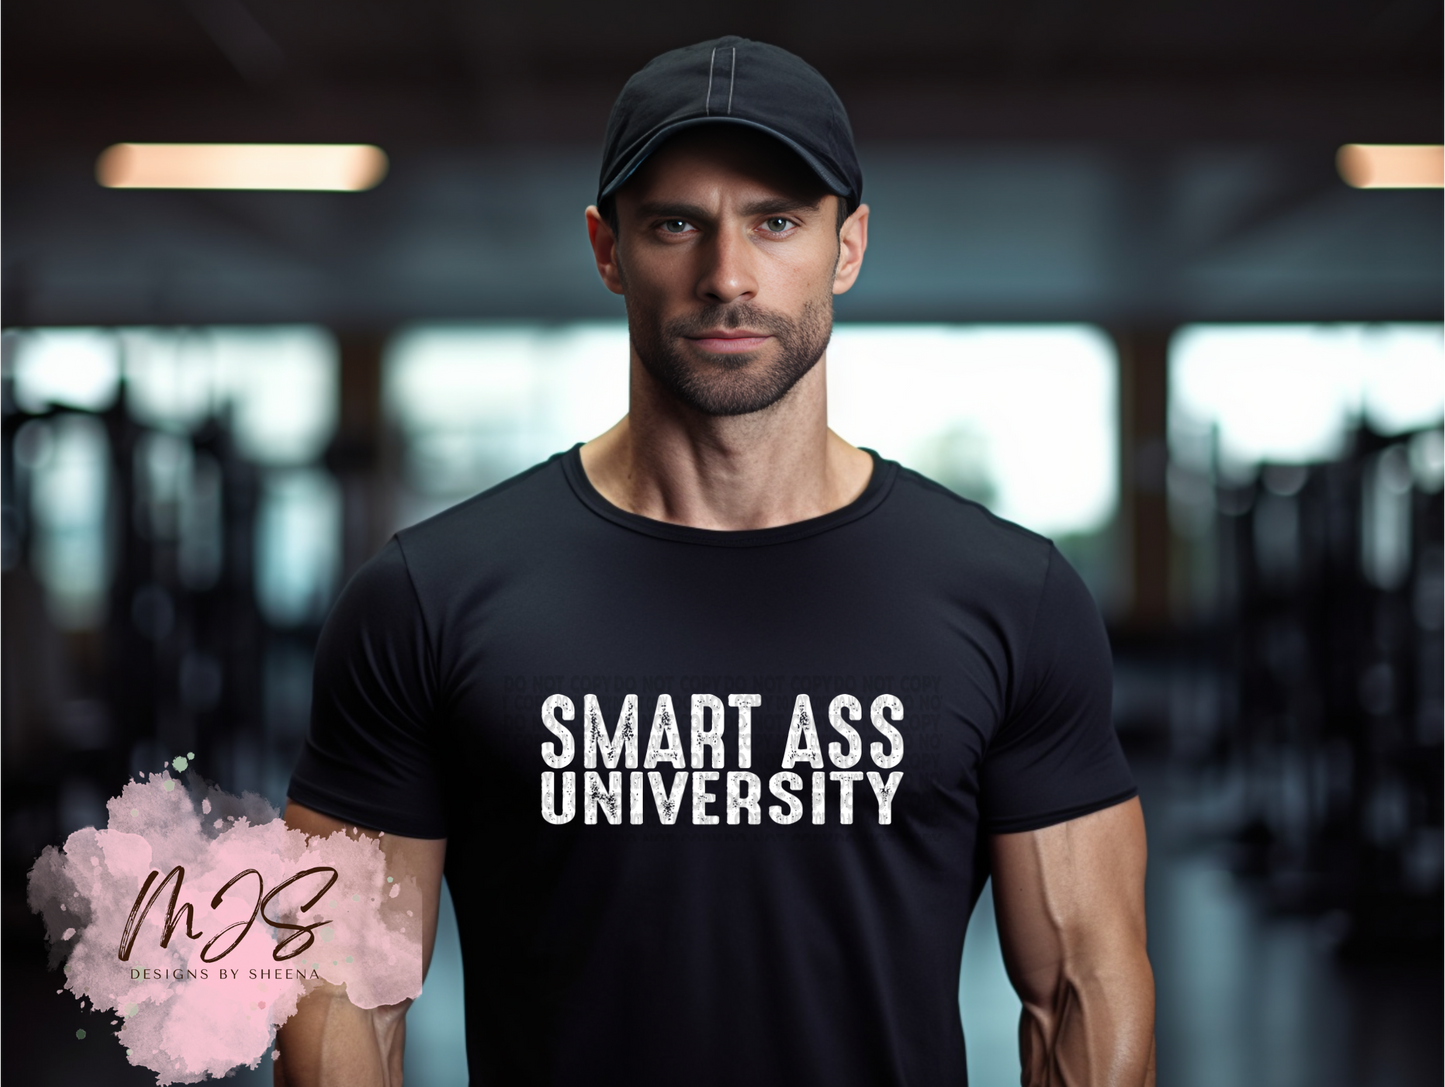 Smart ass university